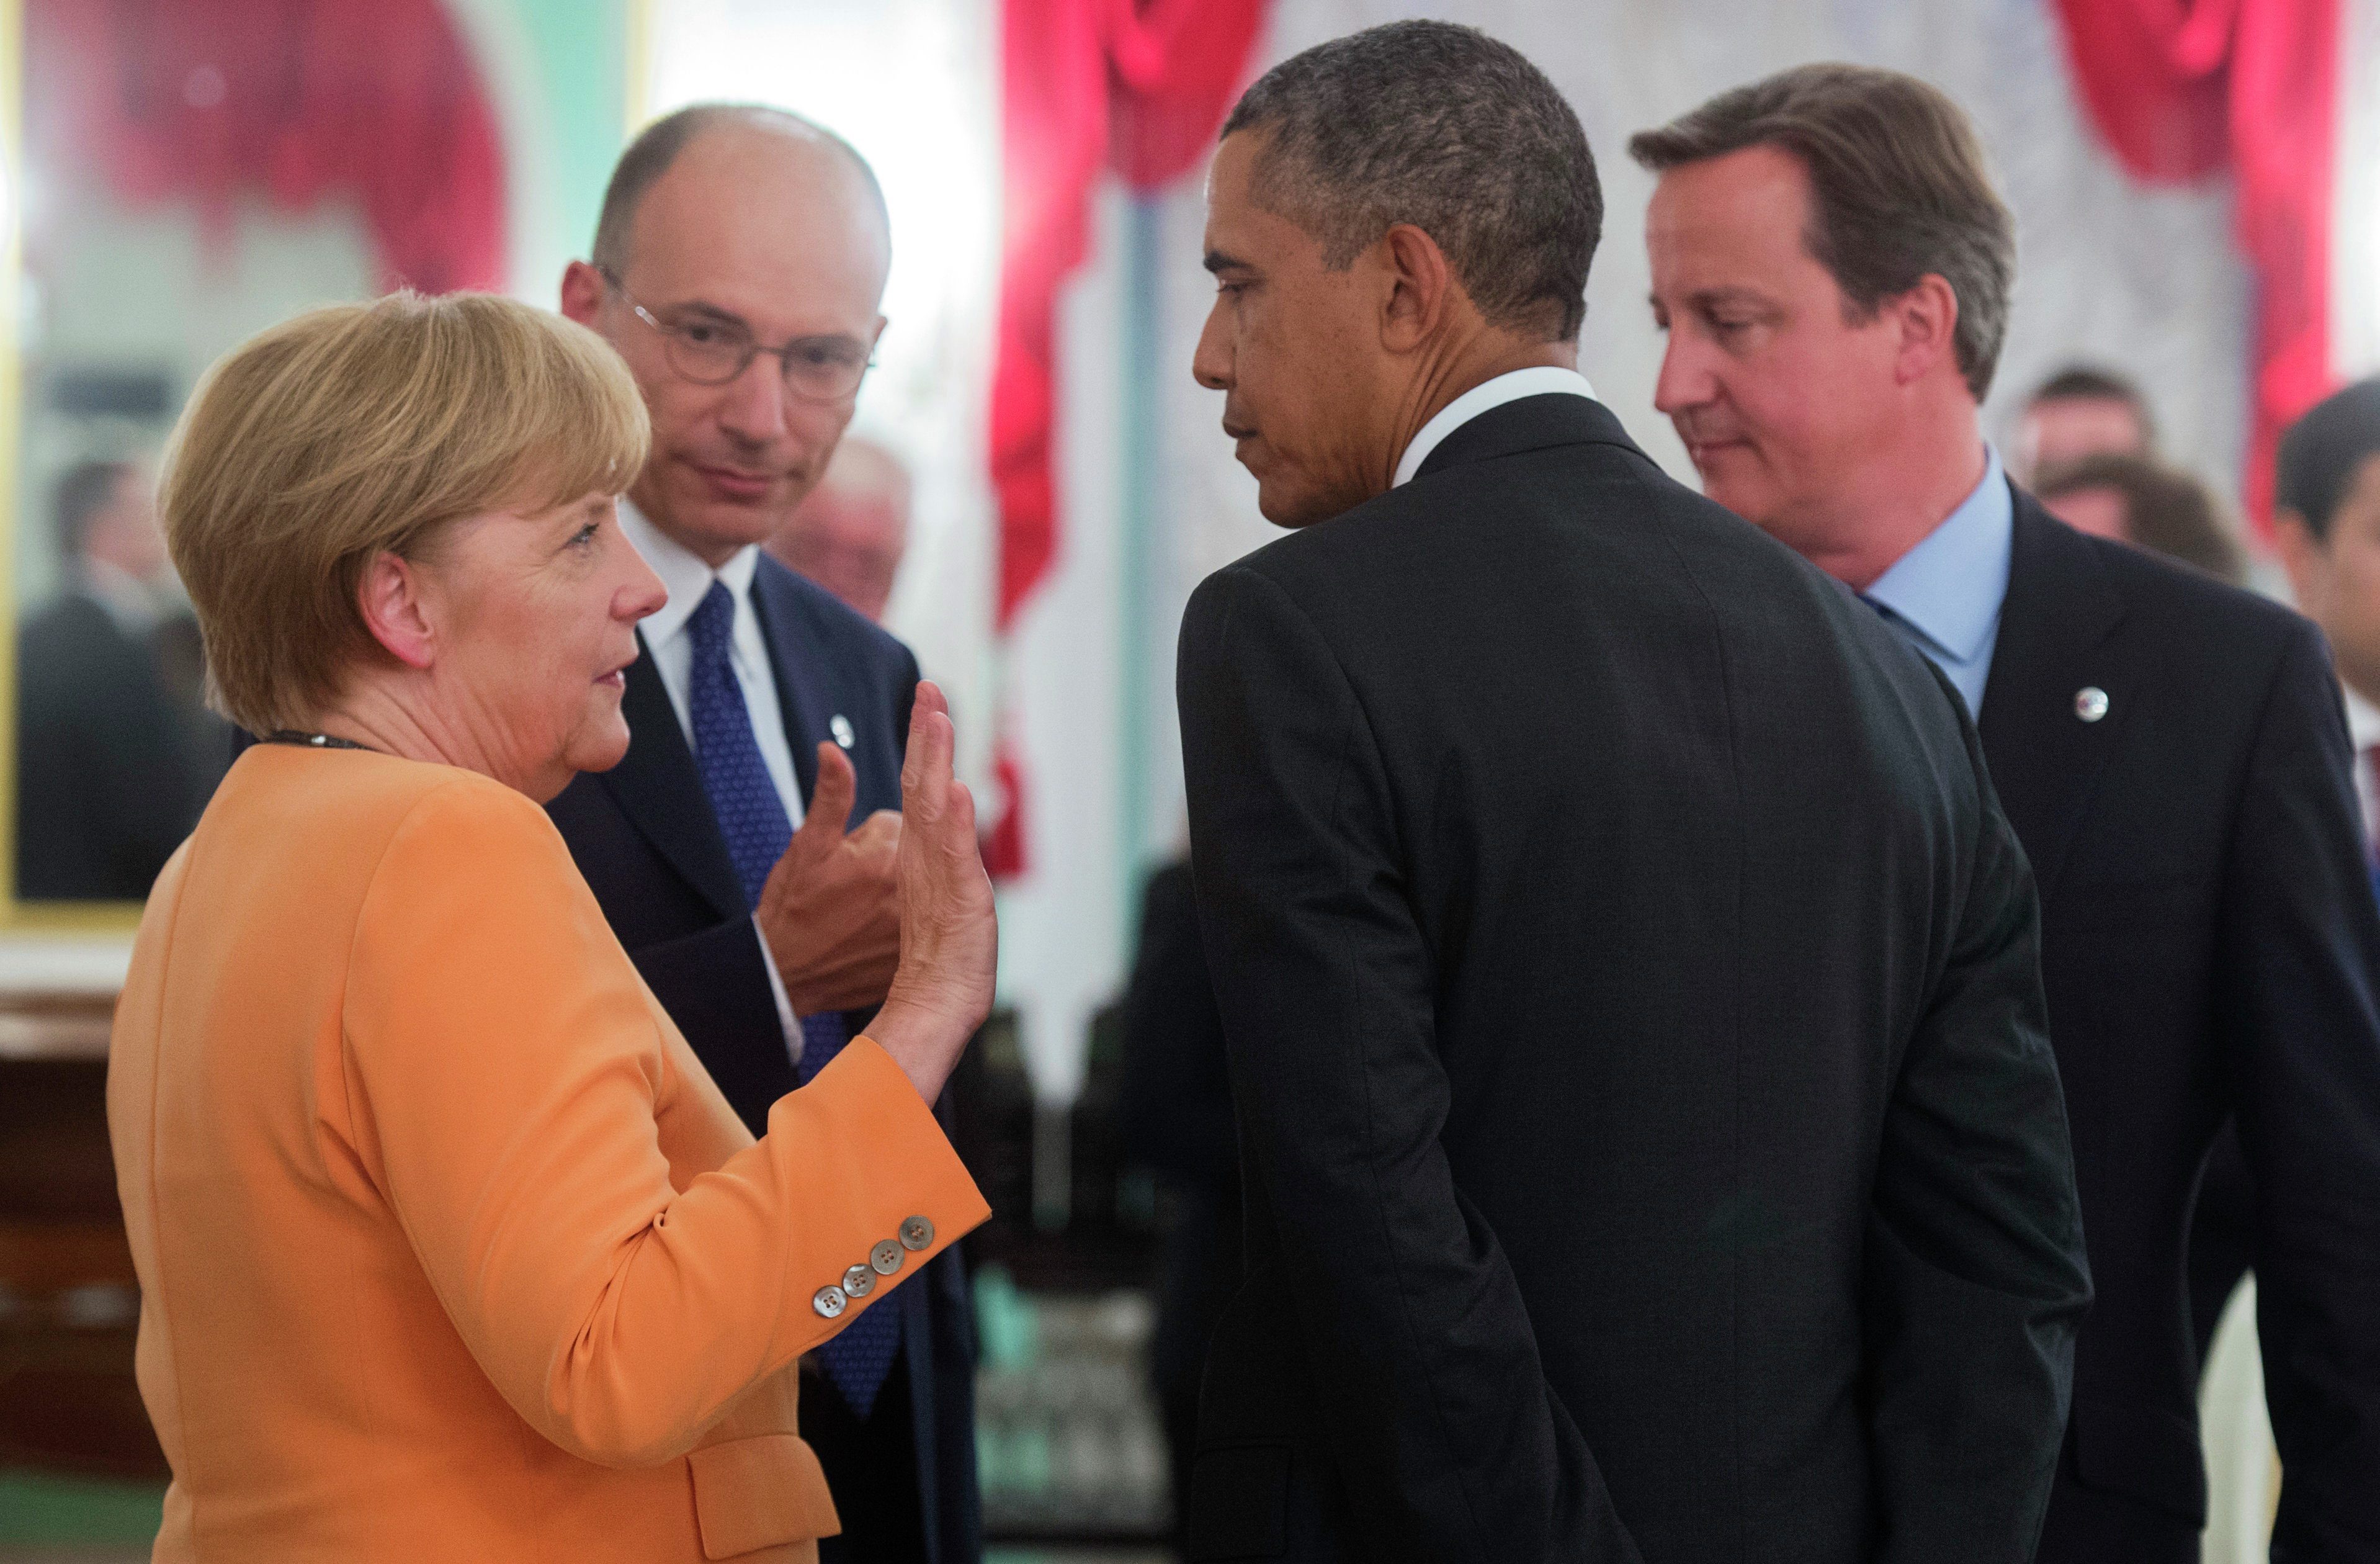 De relatie tussen de Verenigde Staten en Duitsland verslechtert met de dag. Het afluisterschandaal lijkt nu ook economische gevolgen te krijgen. Foto EPA